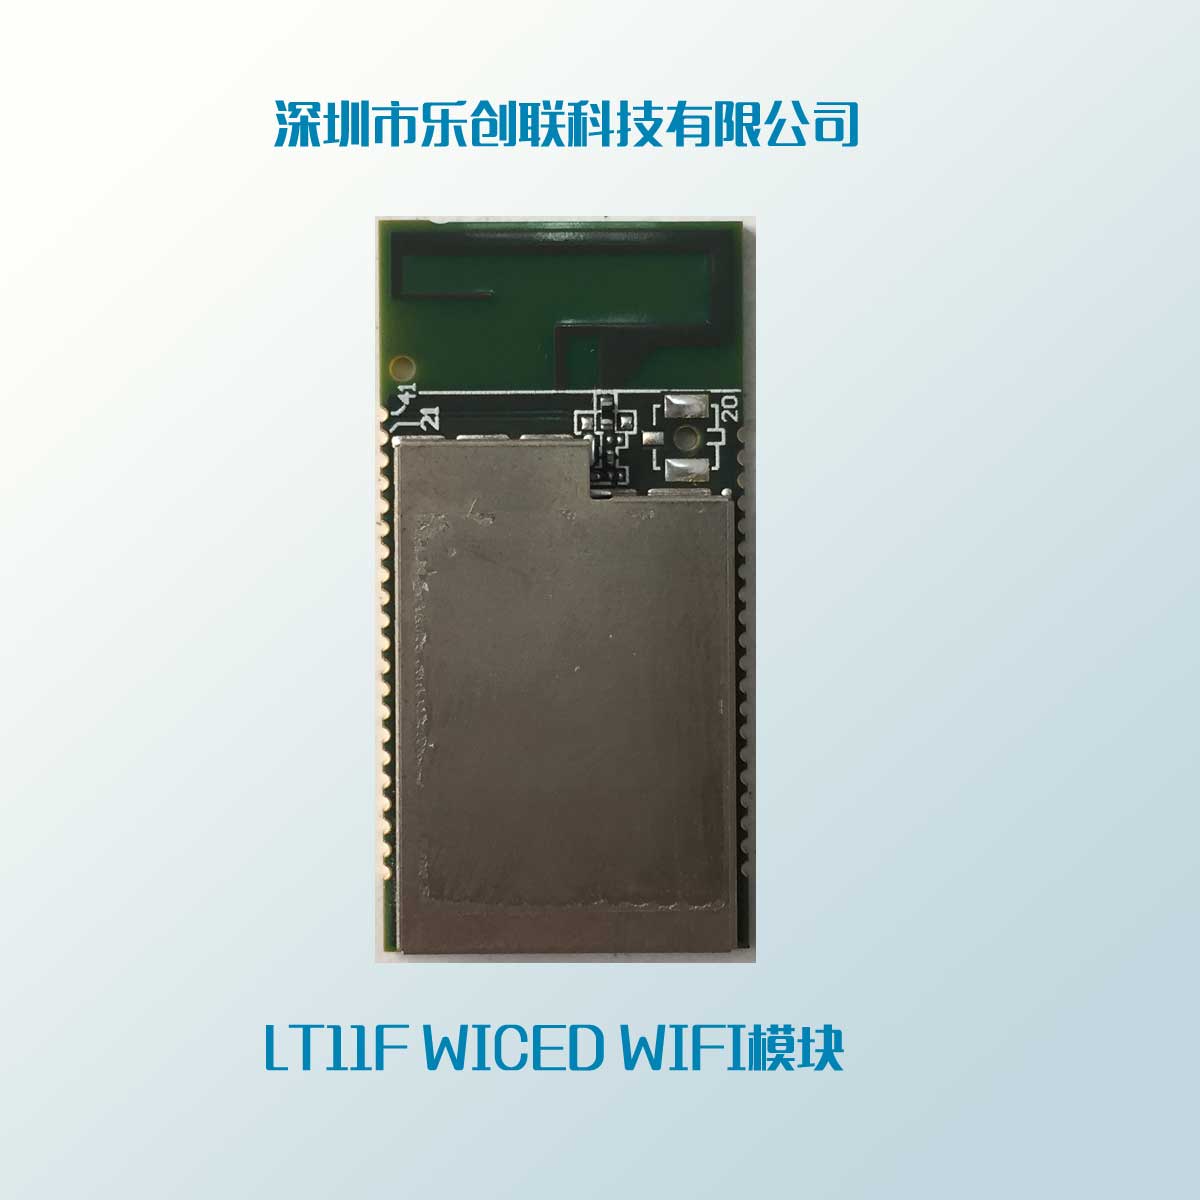 LT11F WICED WIFI模块